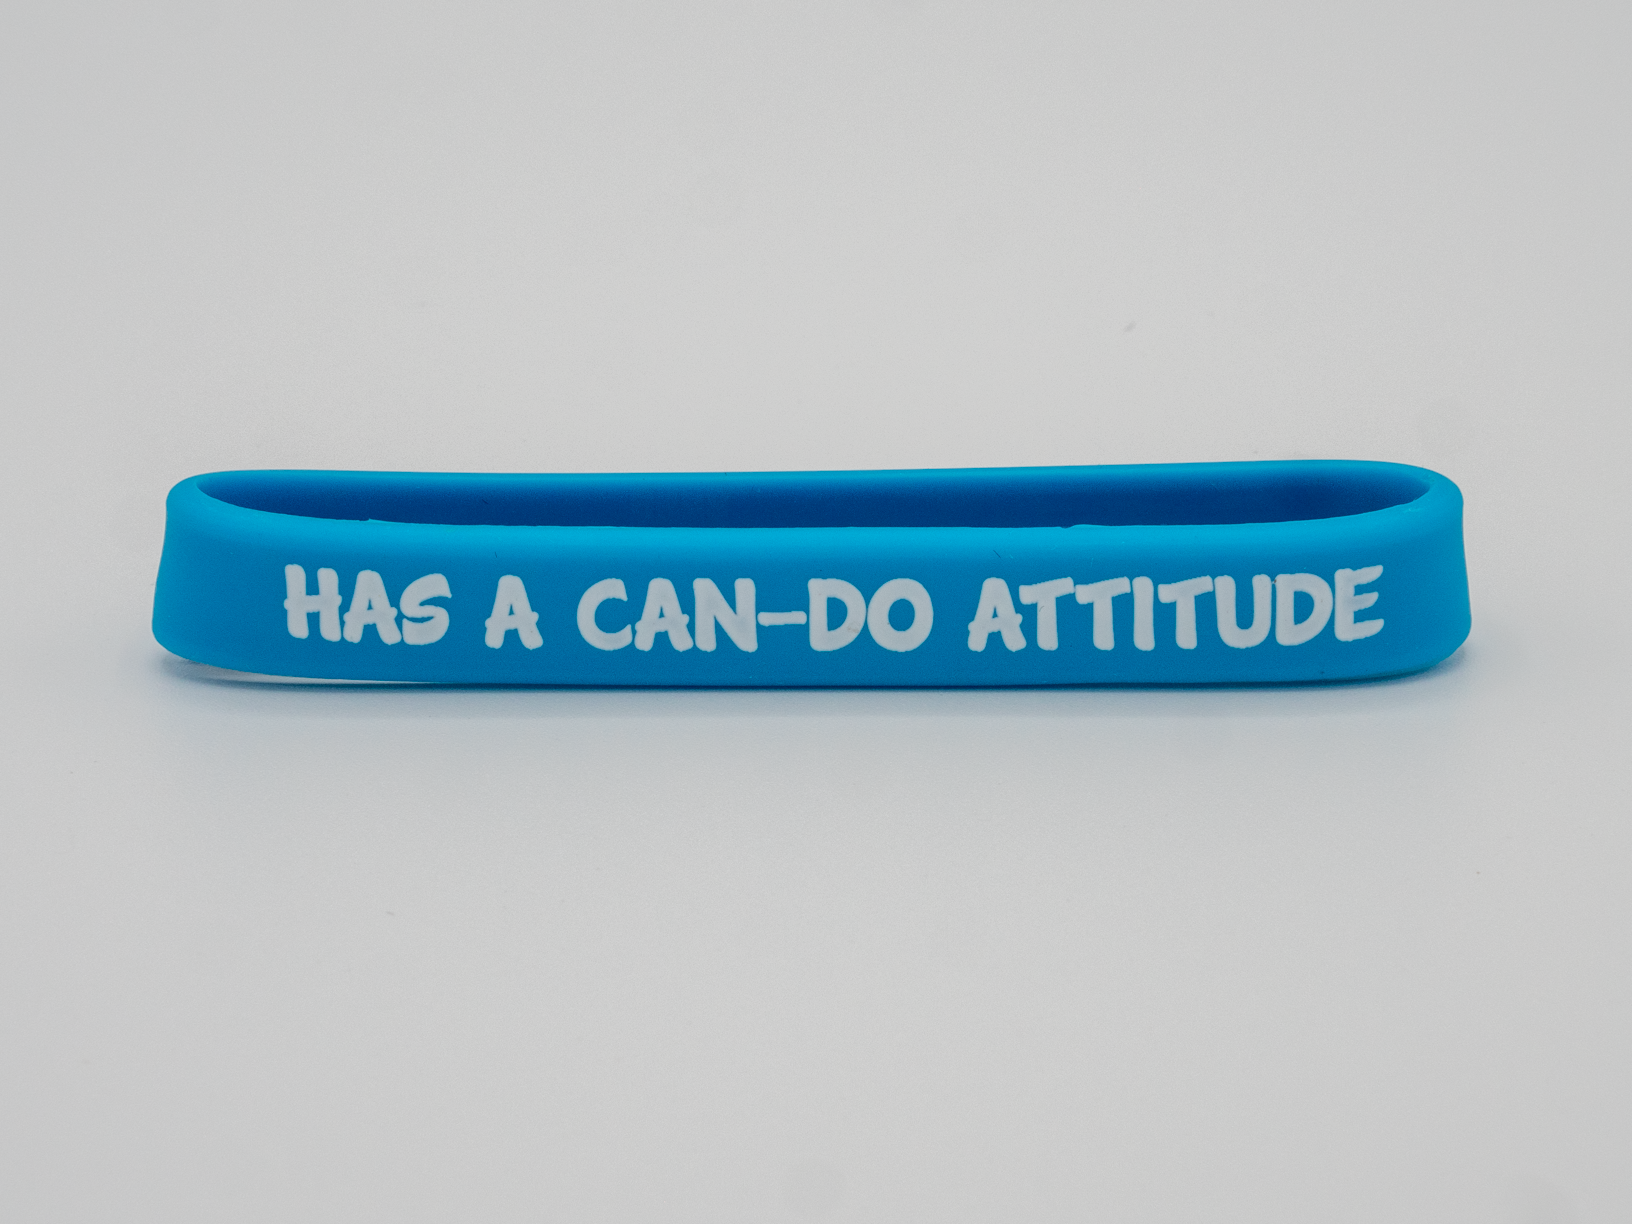 Can-Do Attitude